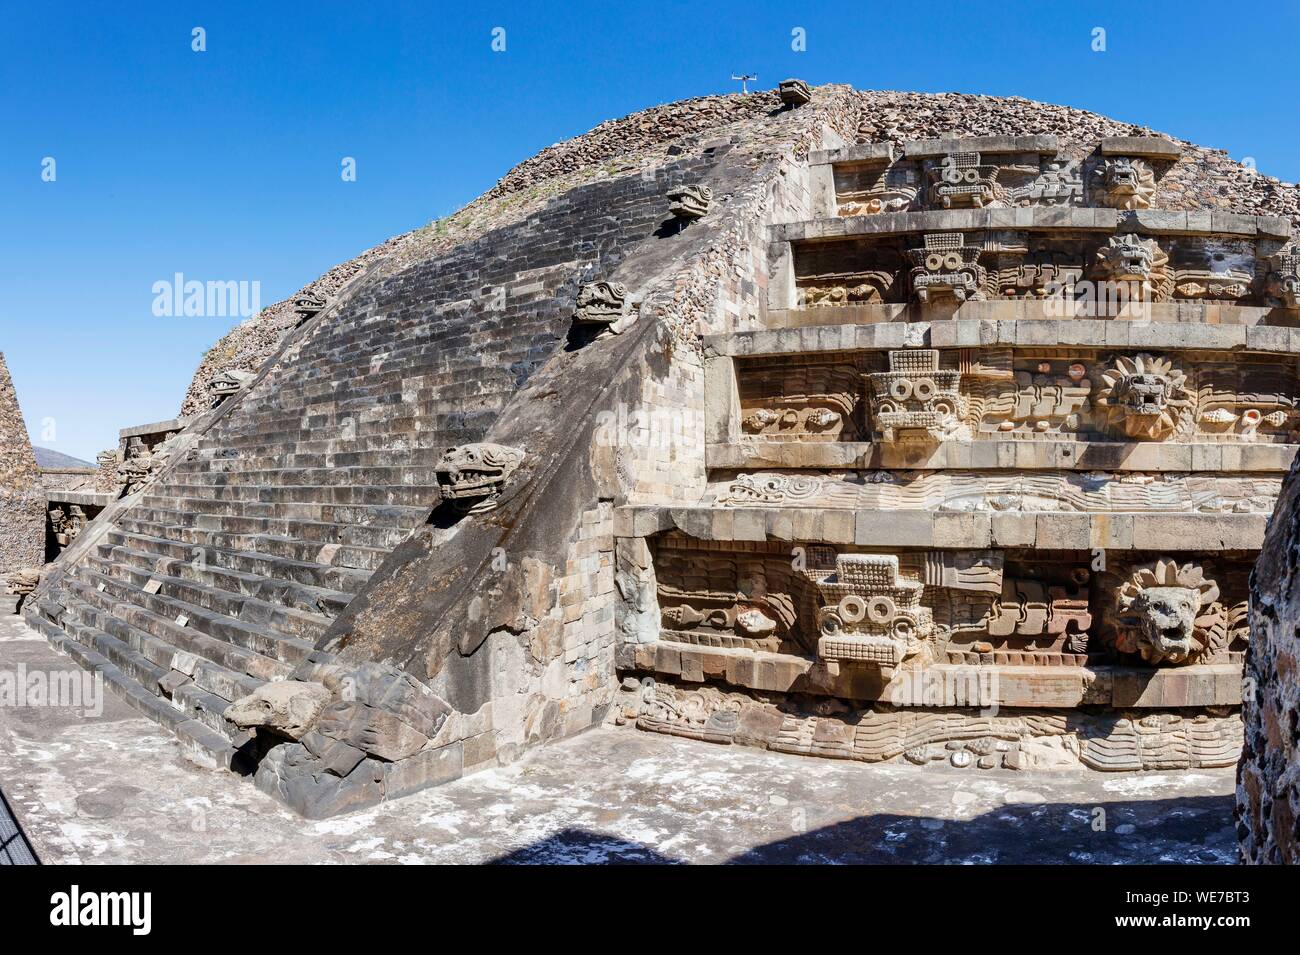 México, Estado de México, Teotihuacán listados como Patrimonio Mundial por la UNESCO, el templo de Quetzalcoatl Foto de stock